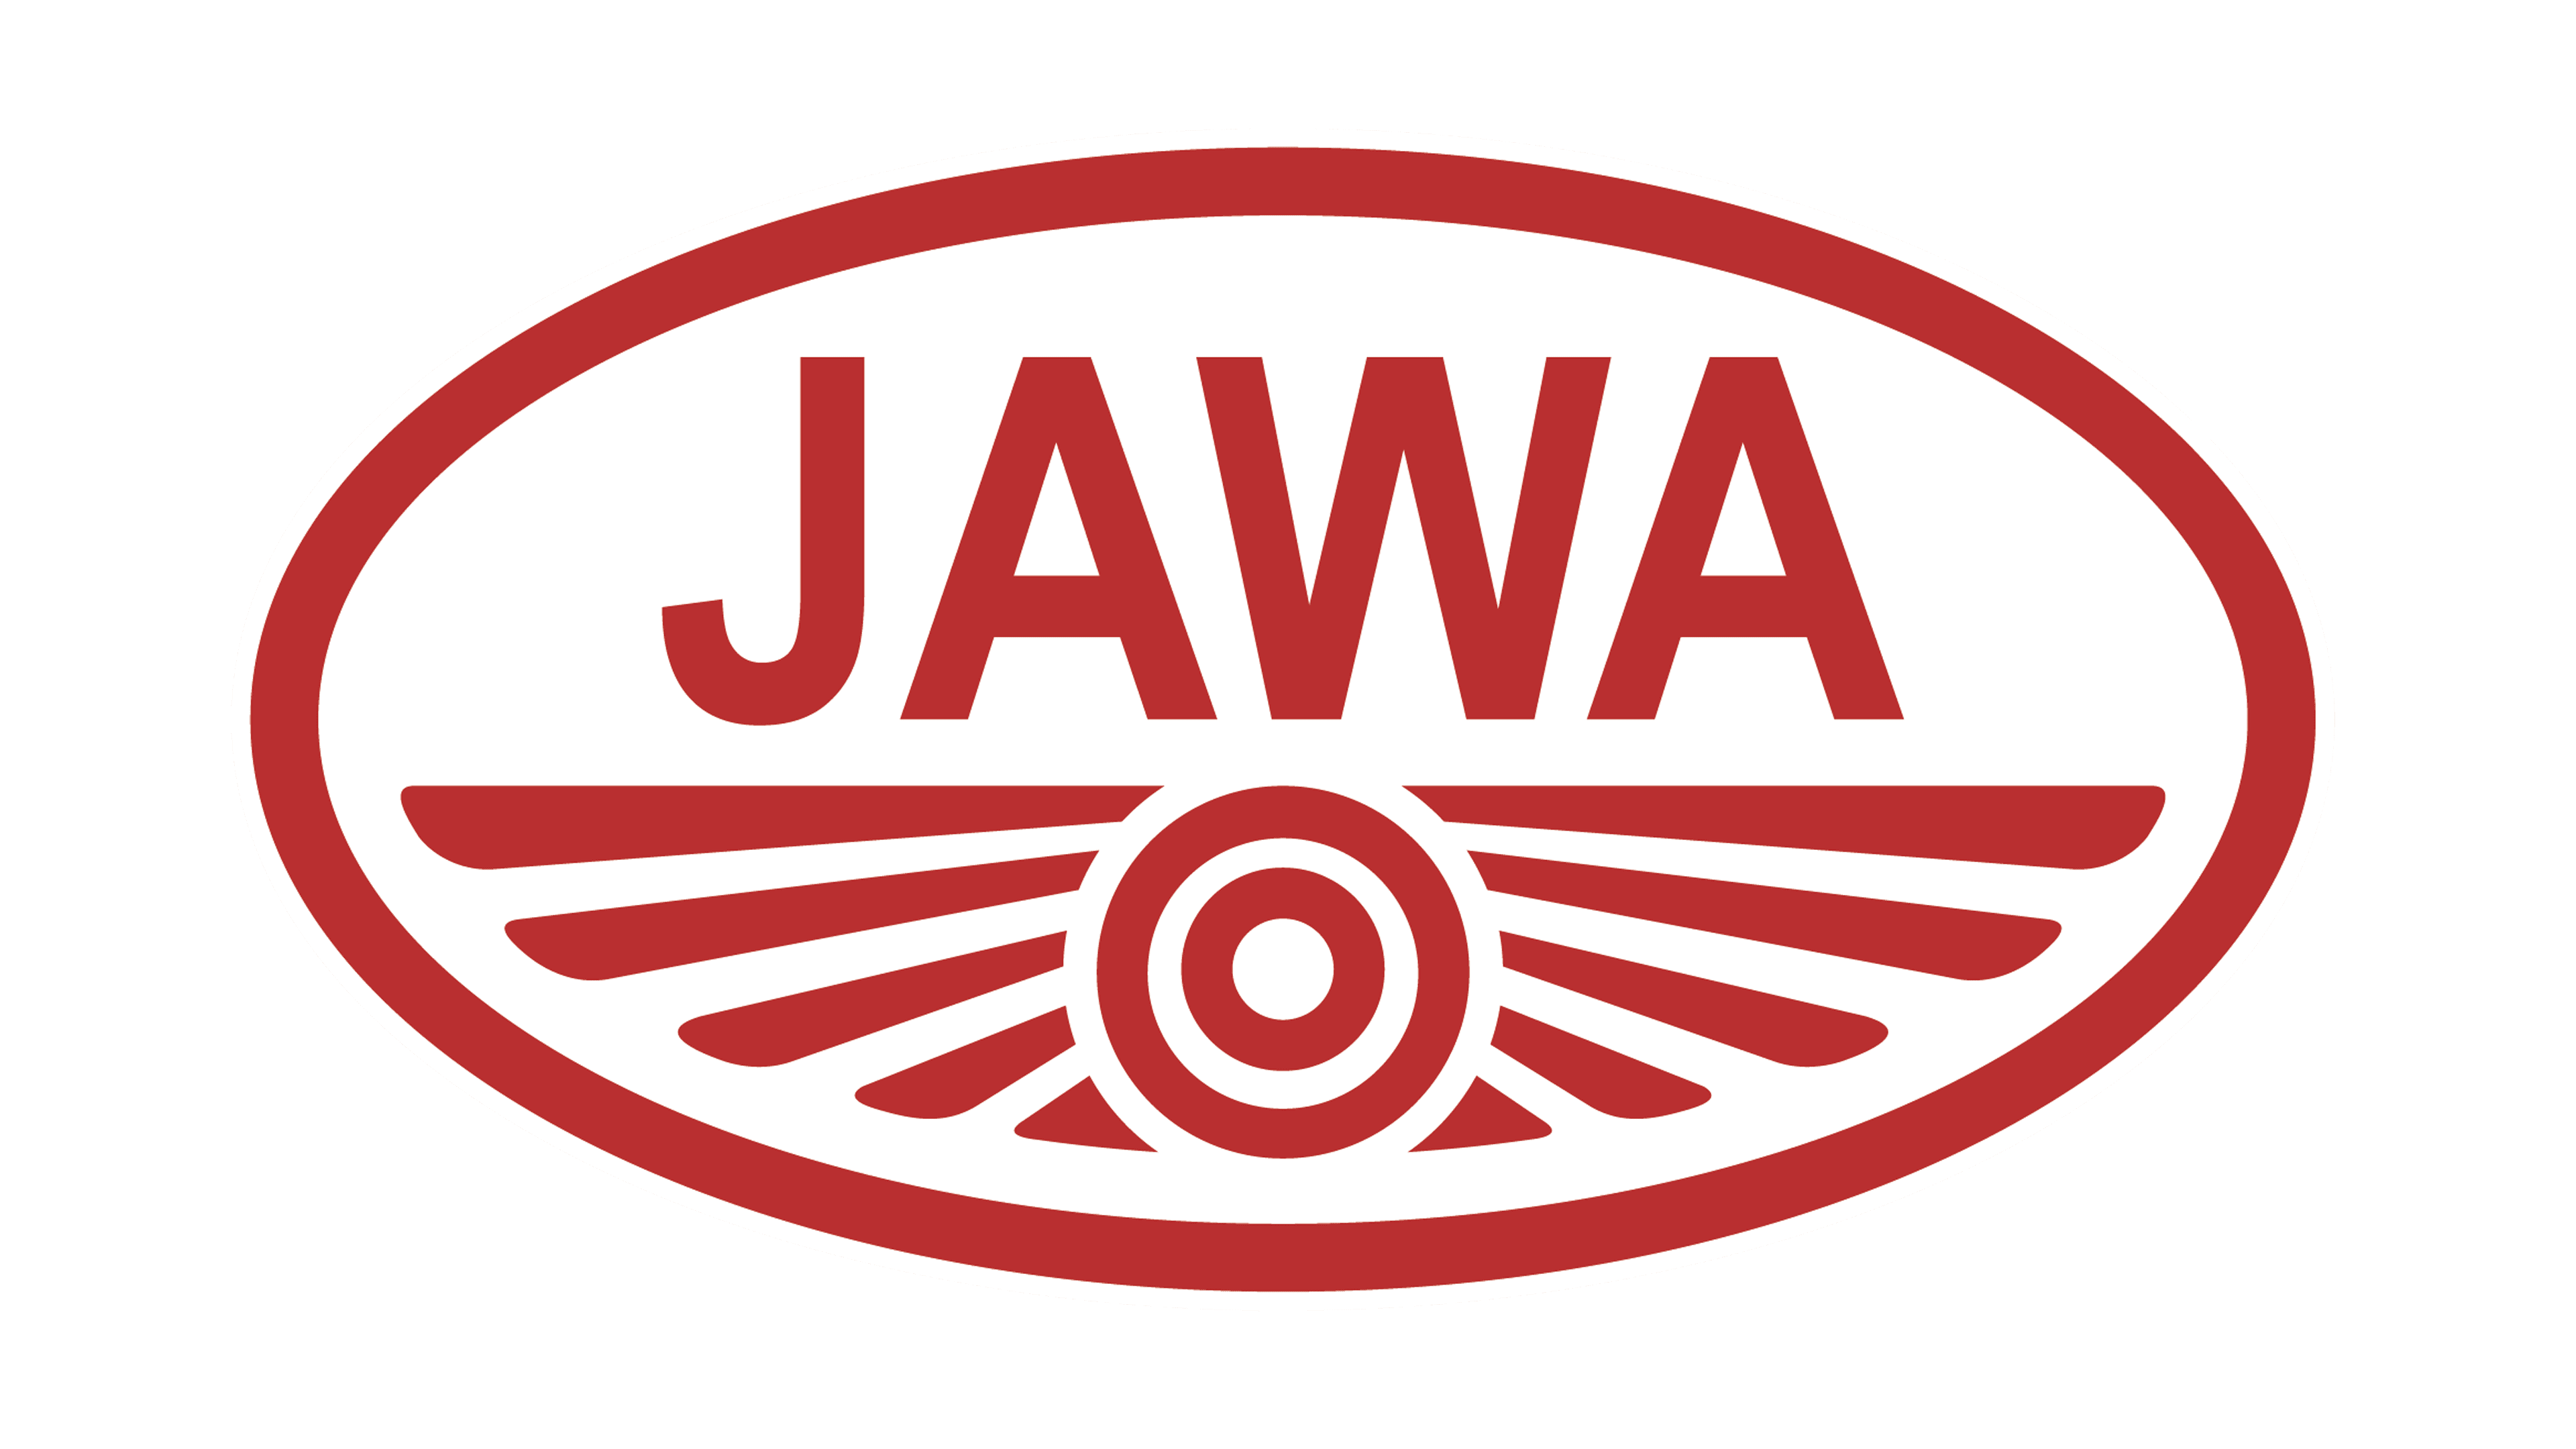 JAWA Motorcycle Transparent Images